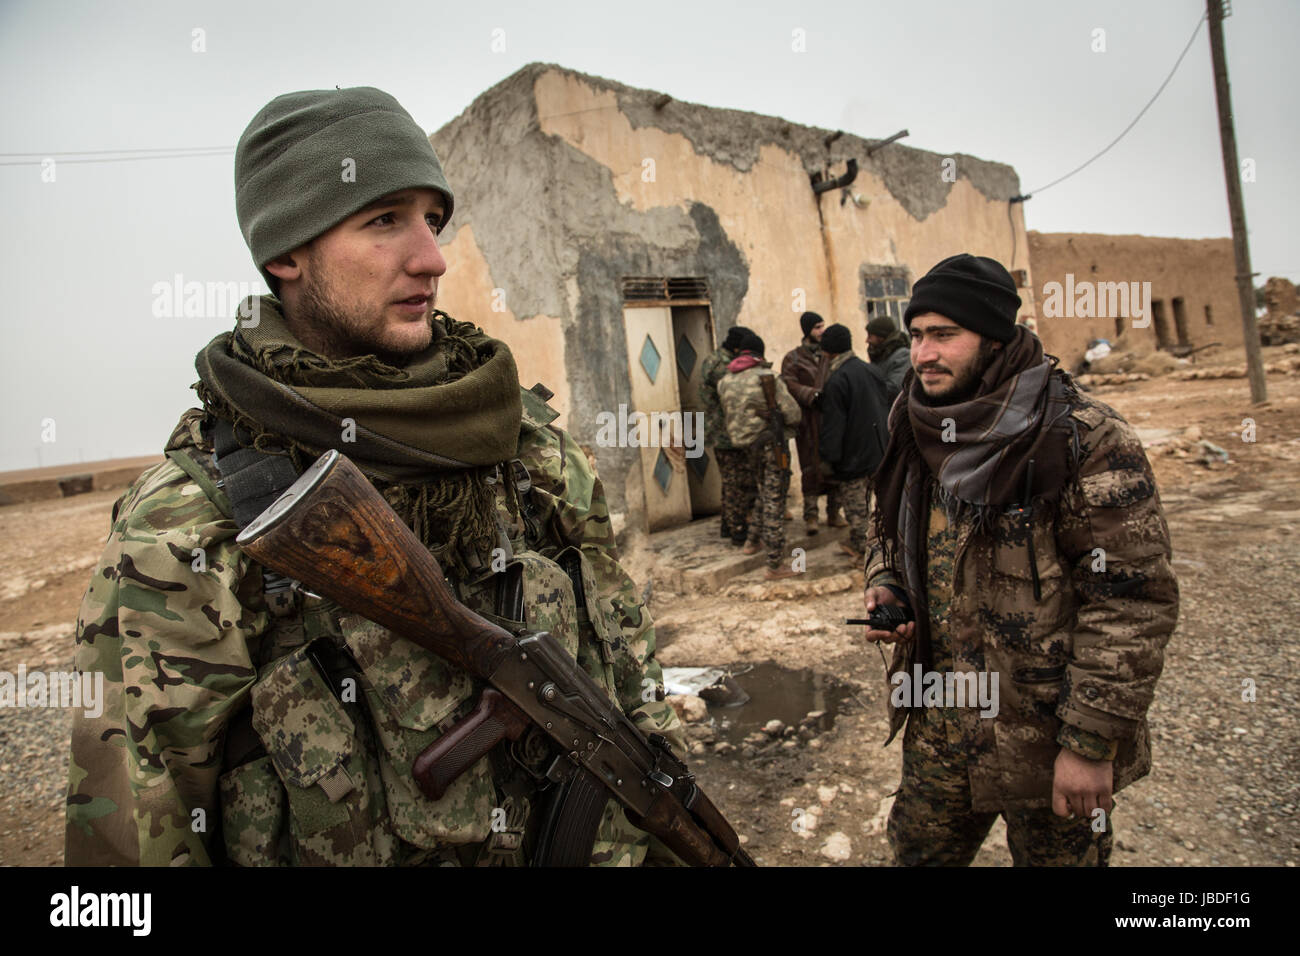 Chris huby / le pictorium - Siria / rojava - ira dell'Eufrate - 21/12/2016 - rojava - Siria rojava / un soldato americain dal Massachussets (Kyle 22) - Egli è qui da un paio di mesi per la lotta contro l'ISIS. Foto Stock